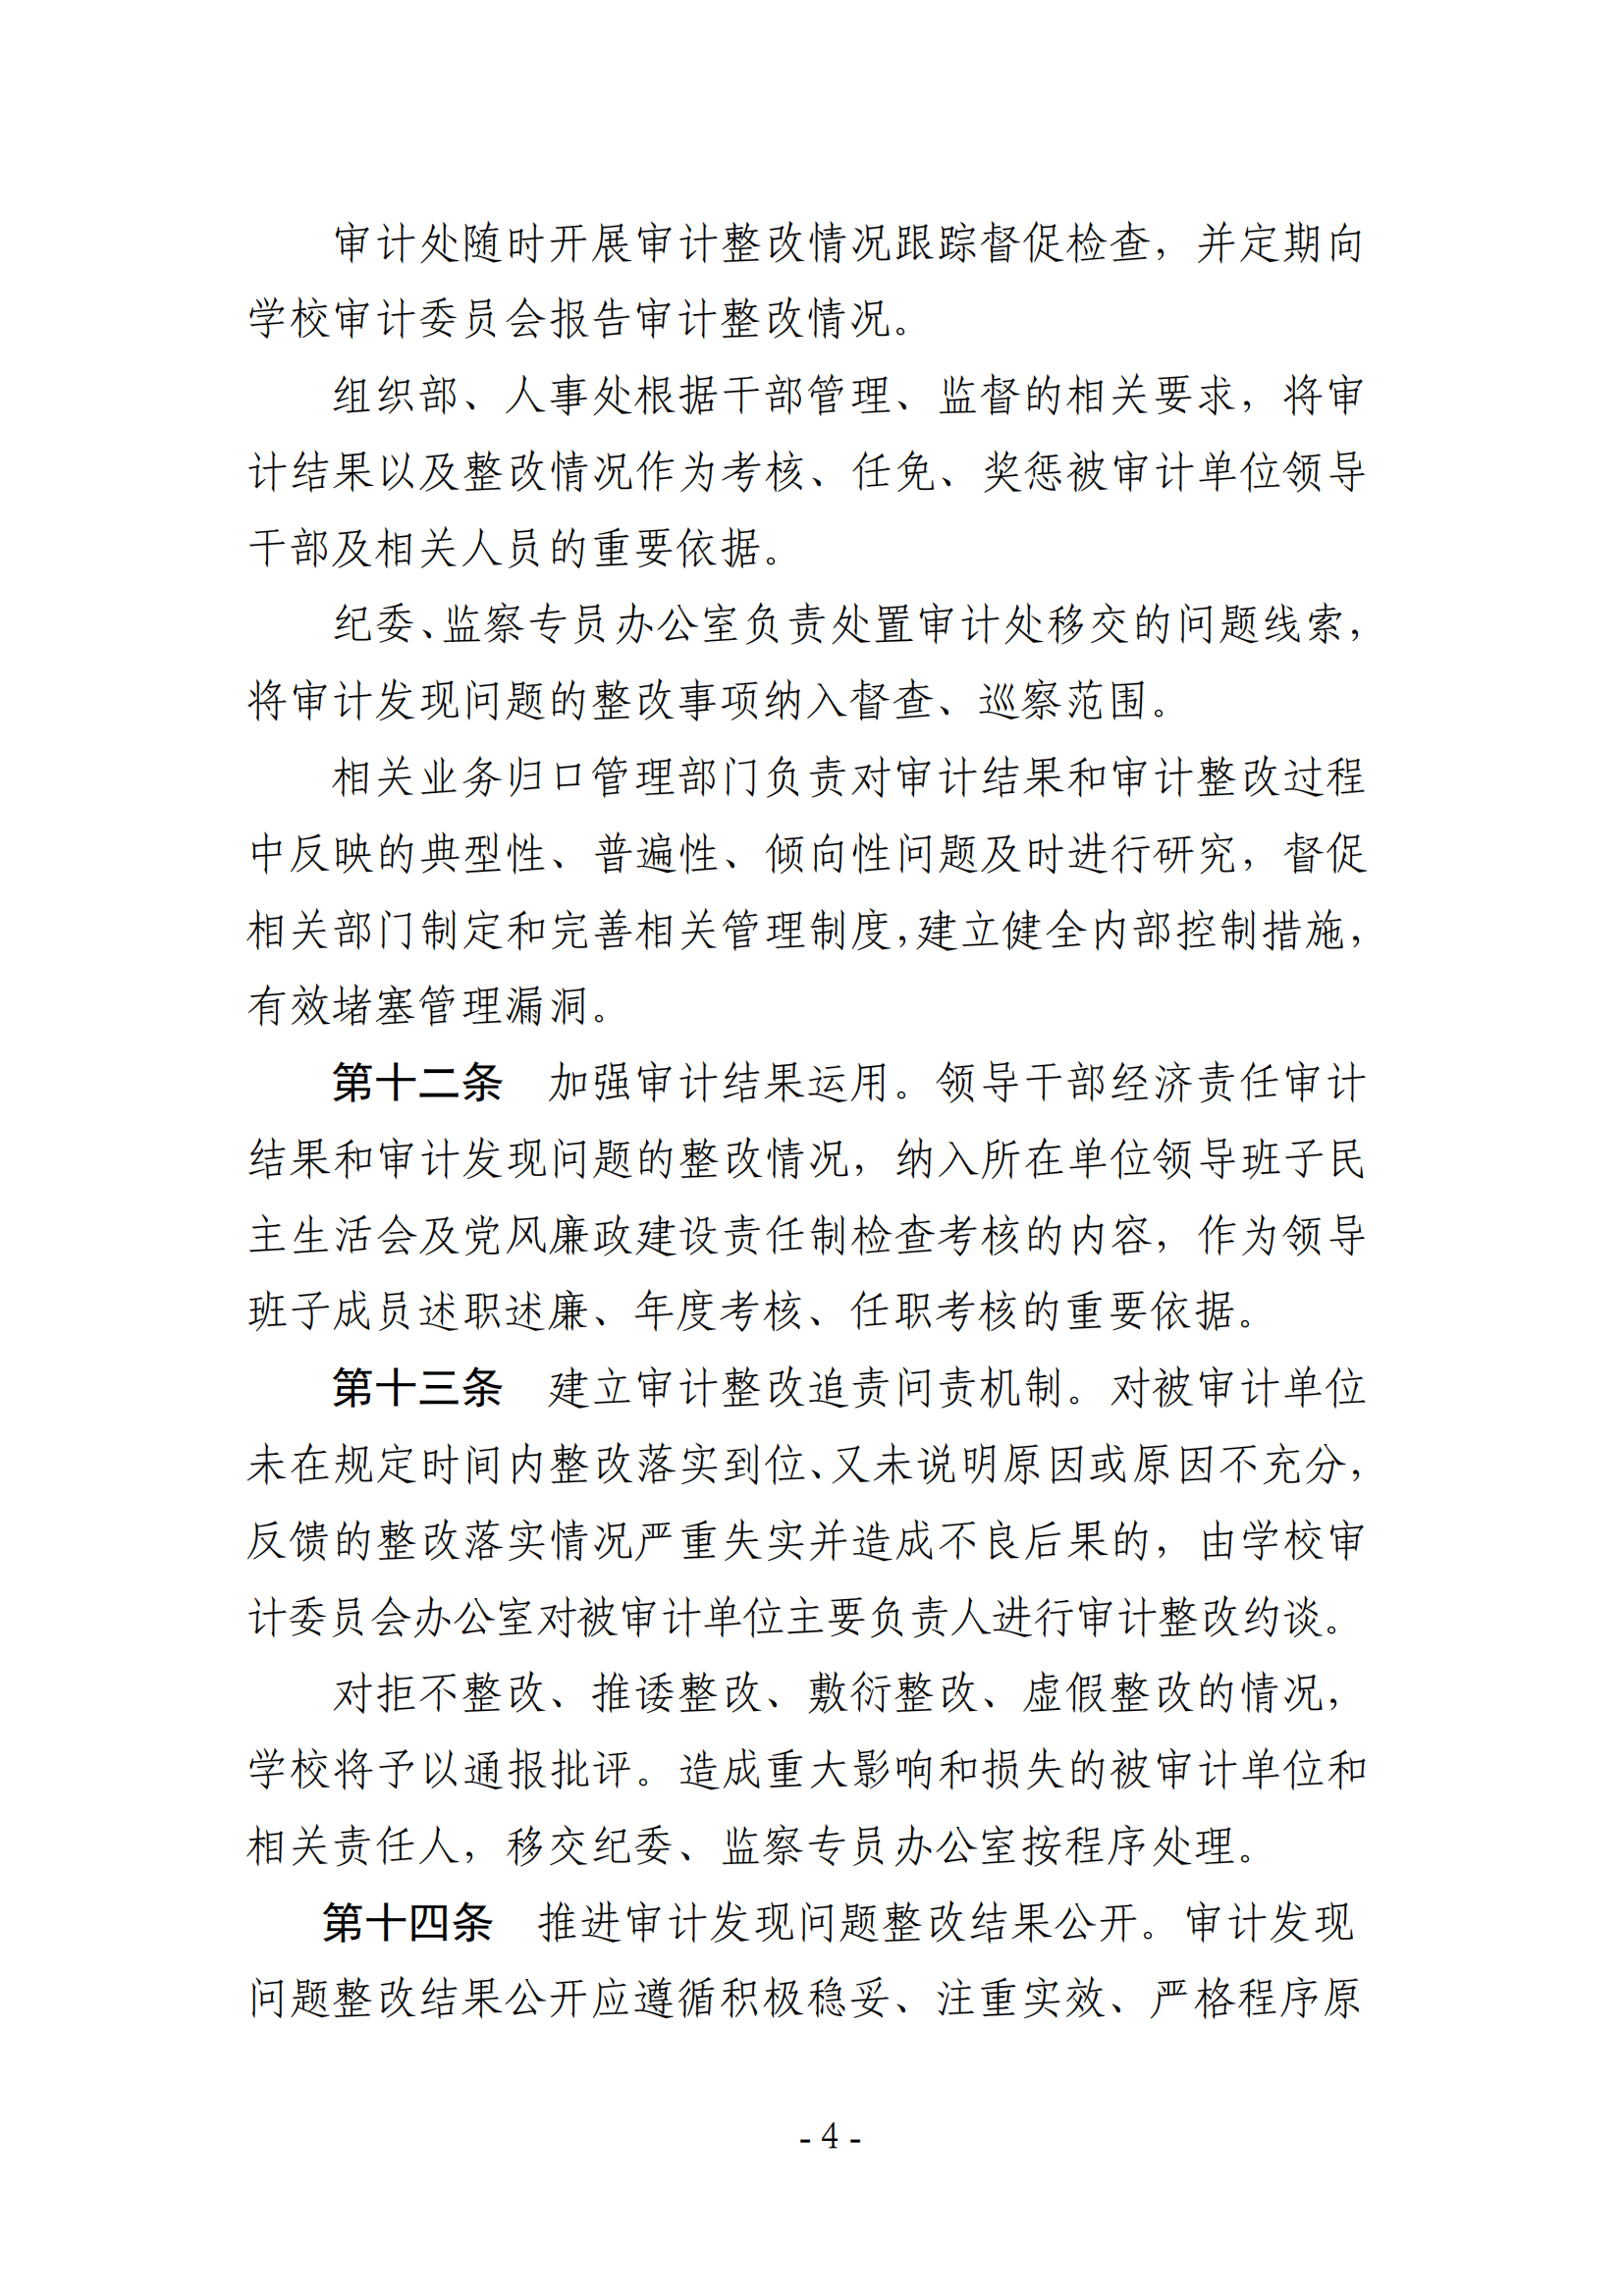 关于印发《湖南农业大学审计查出问题整改实施办法》的通知-正文_03.png